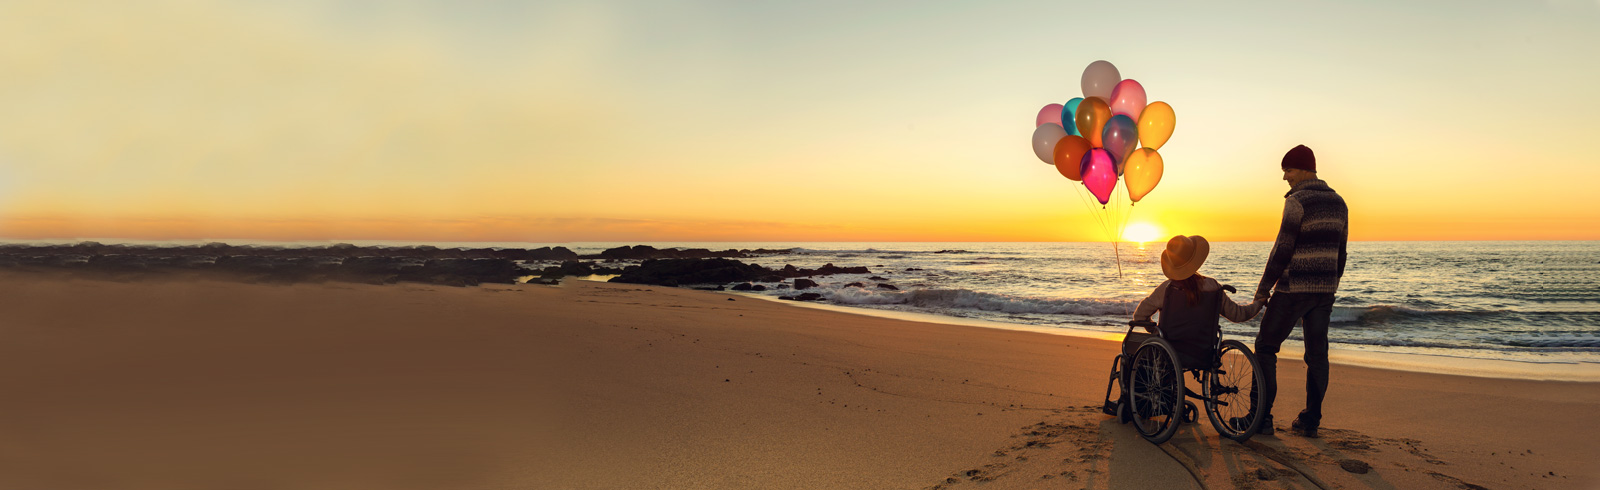 一位女士坐著輪椅並拿著氣球,與伴侶在海灘上觀賞日落